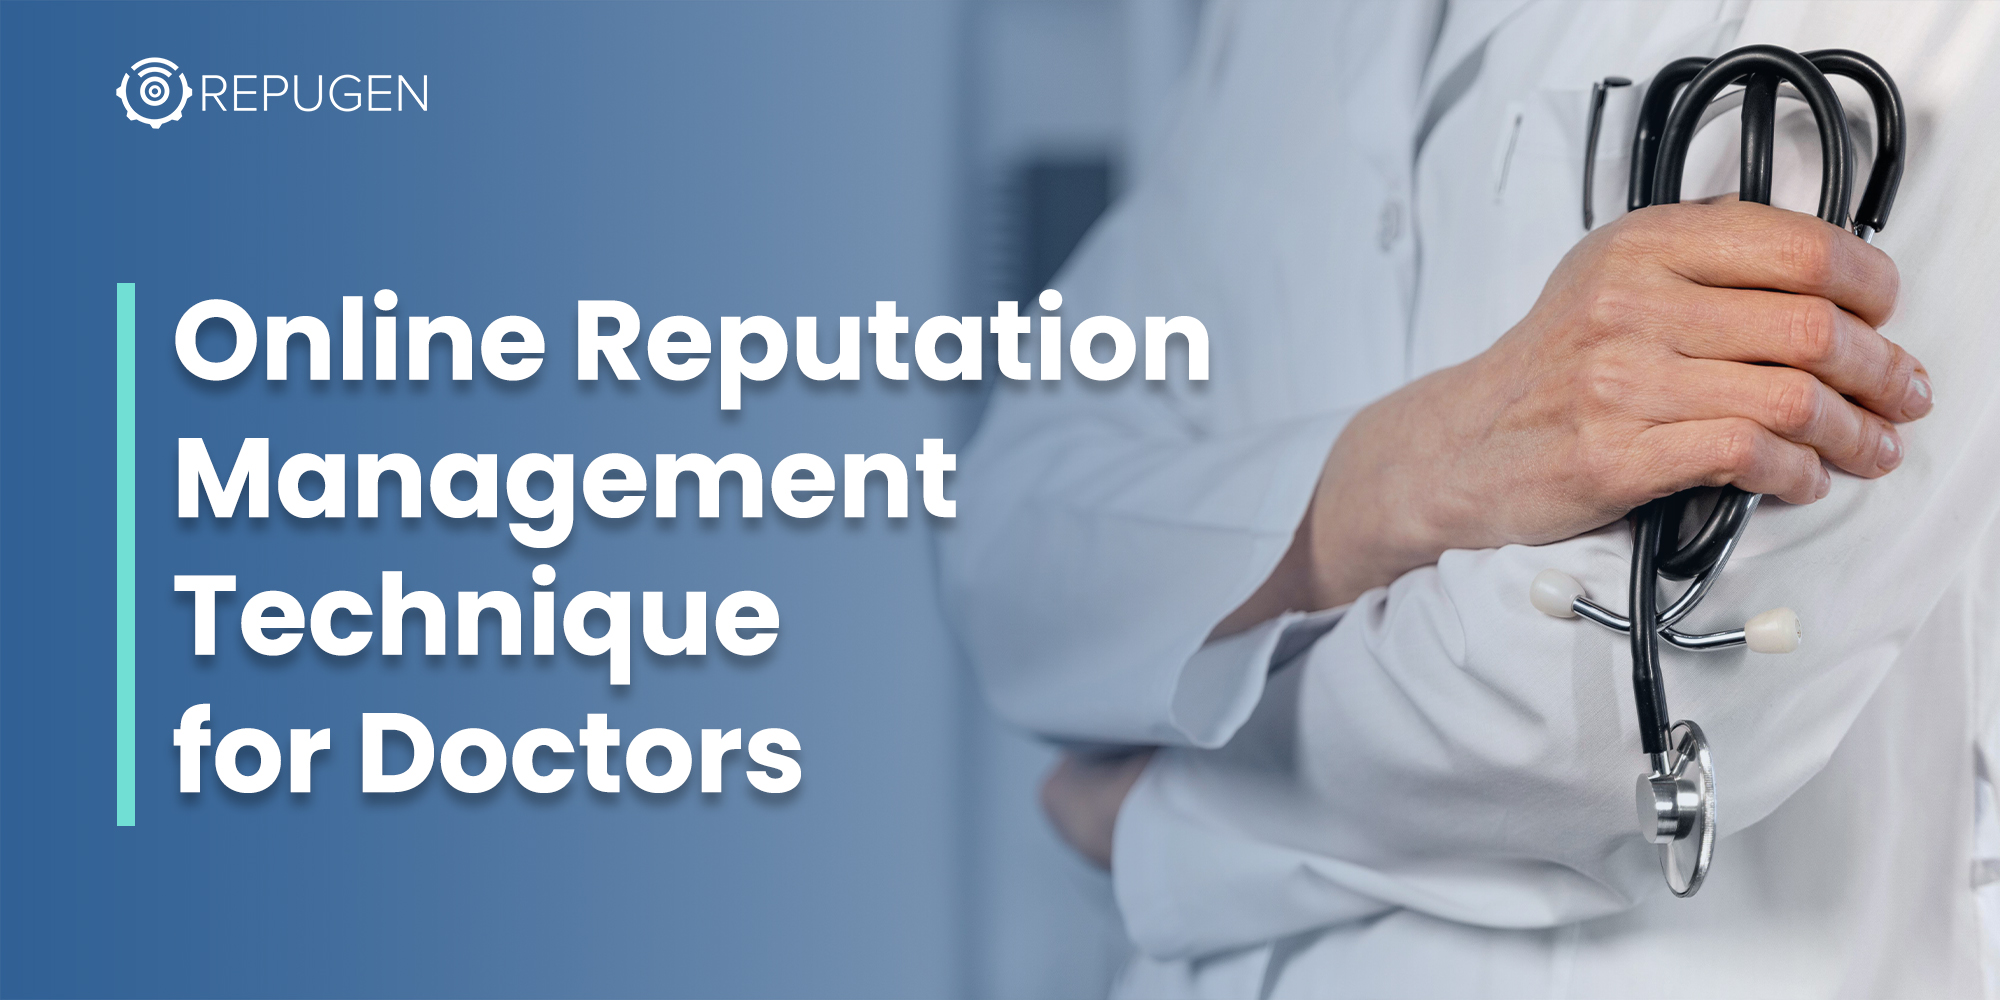 5 Top Online Reputation Management Techniques for Doctors